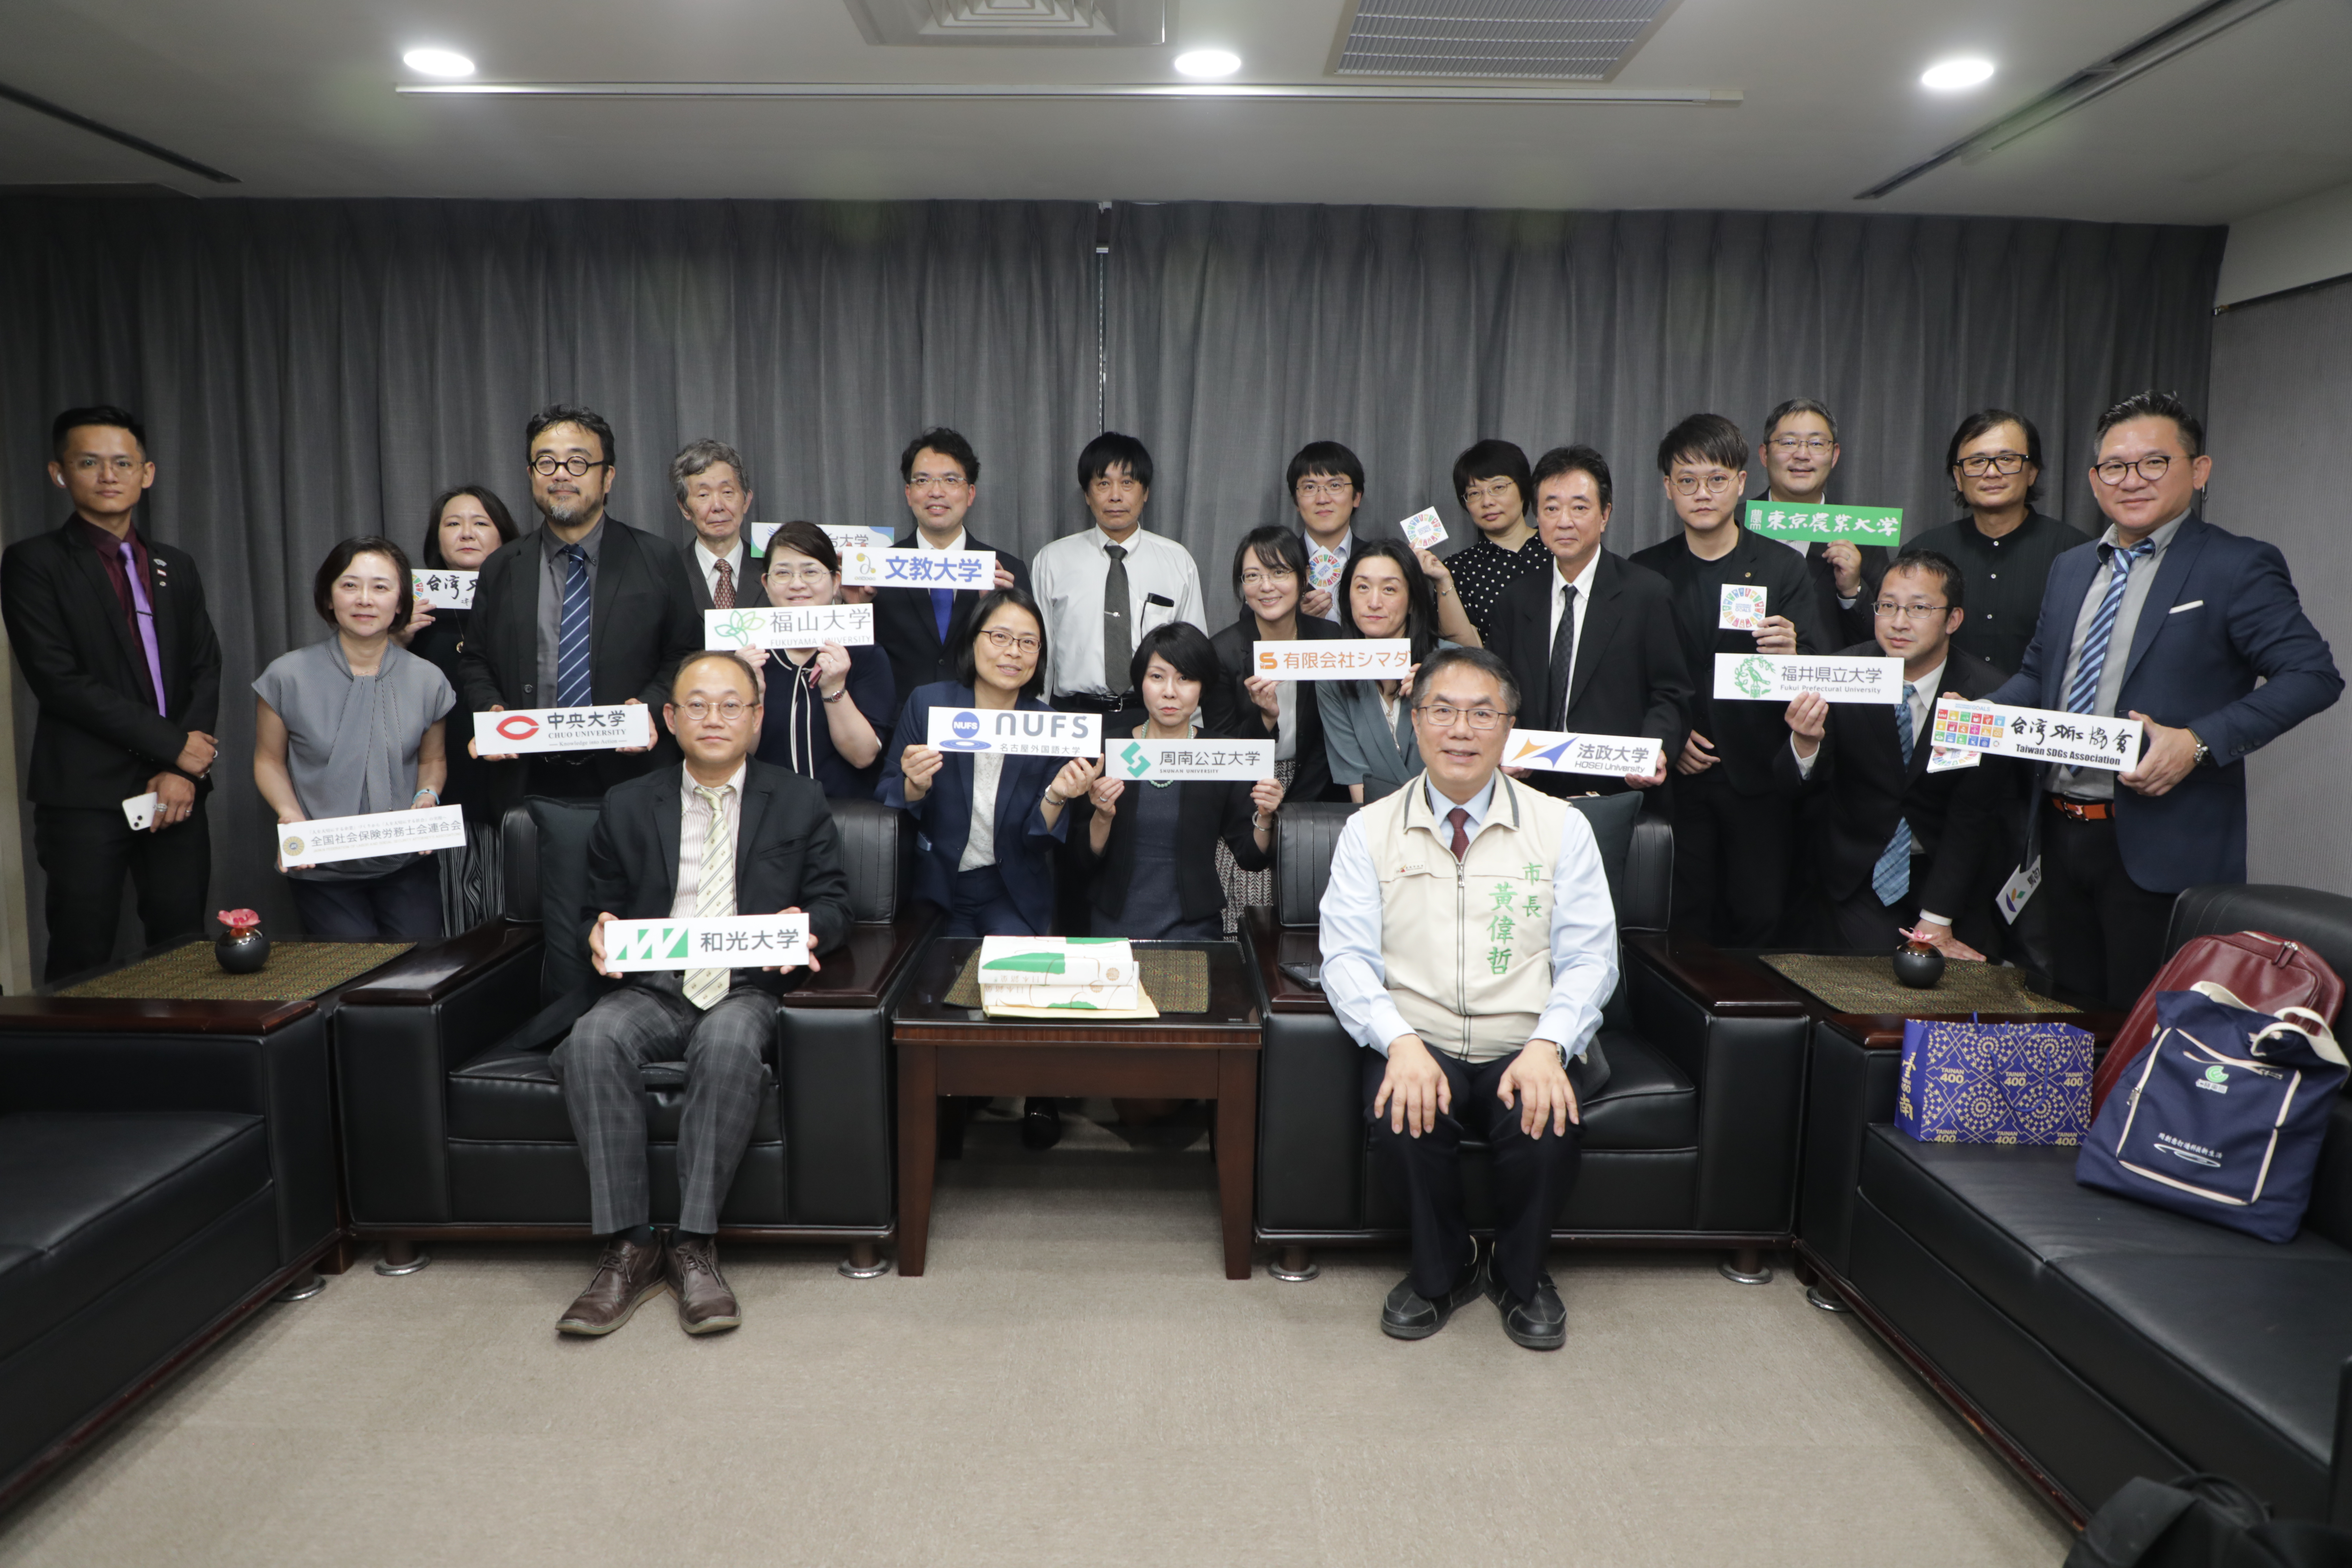 黄偉哲台南市長がSDGsの日台協力に期待　日本の大学教授が表敬訪問　